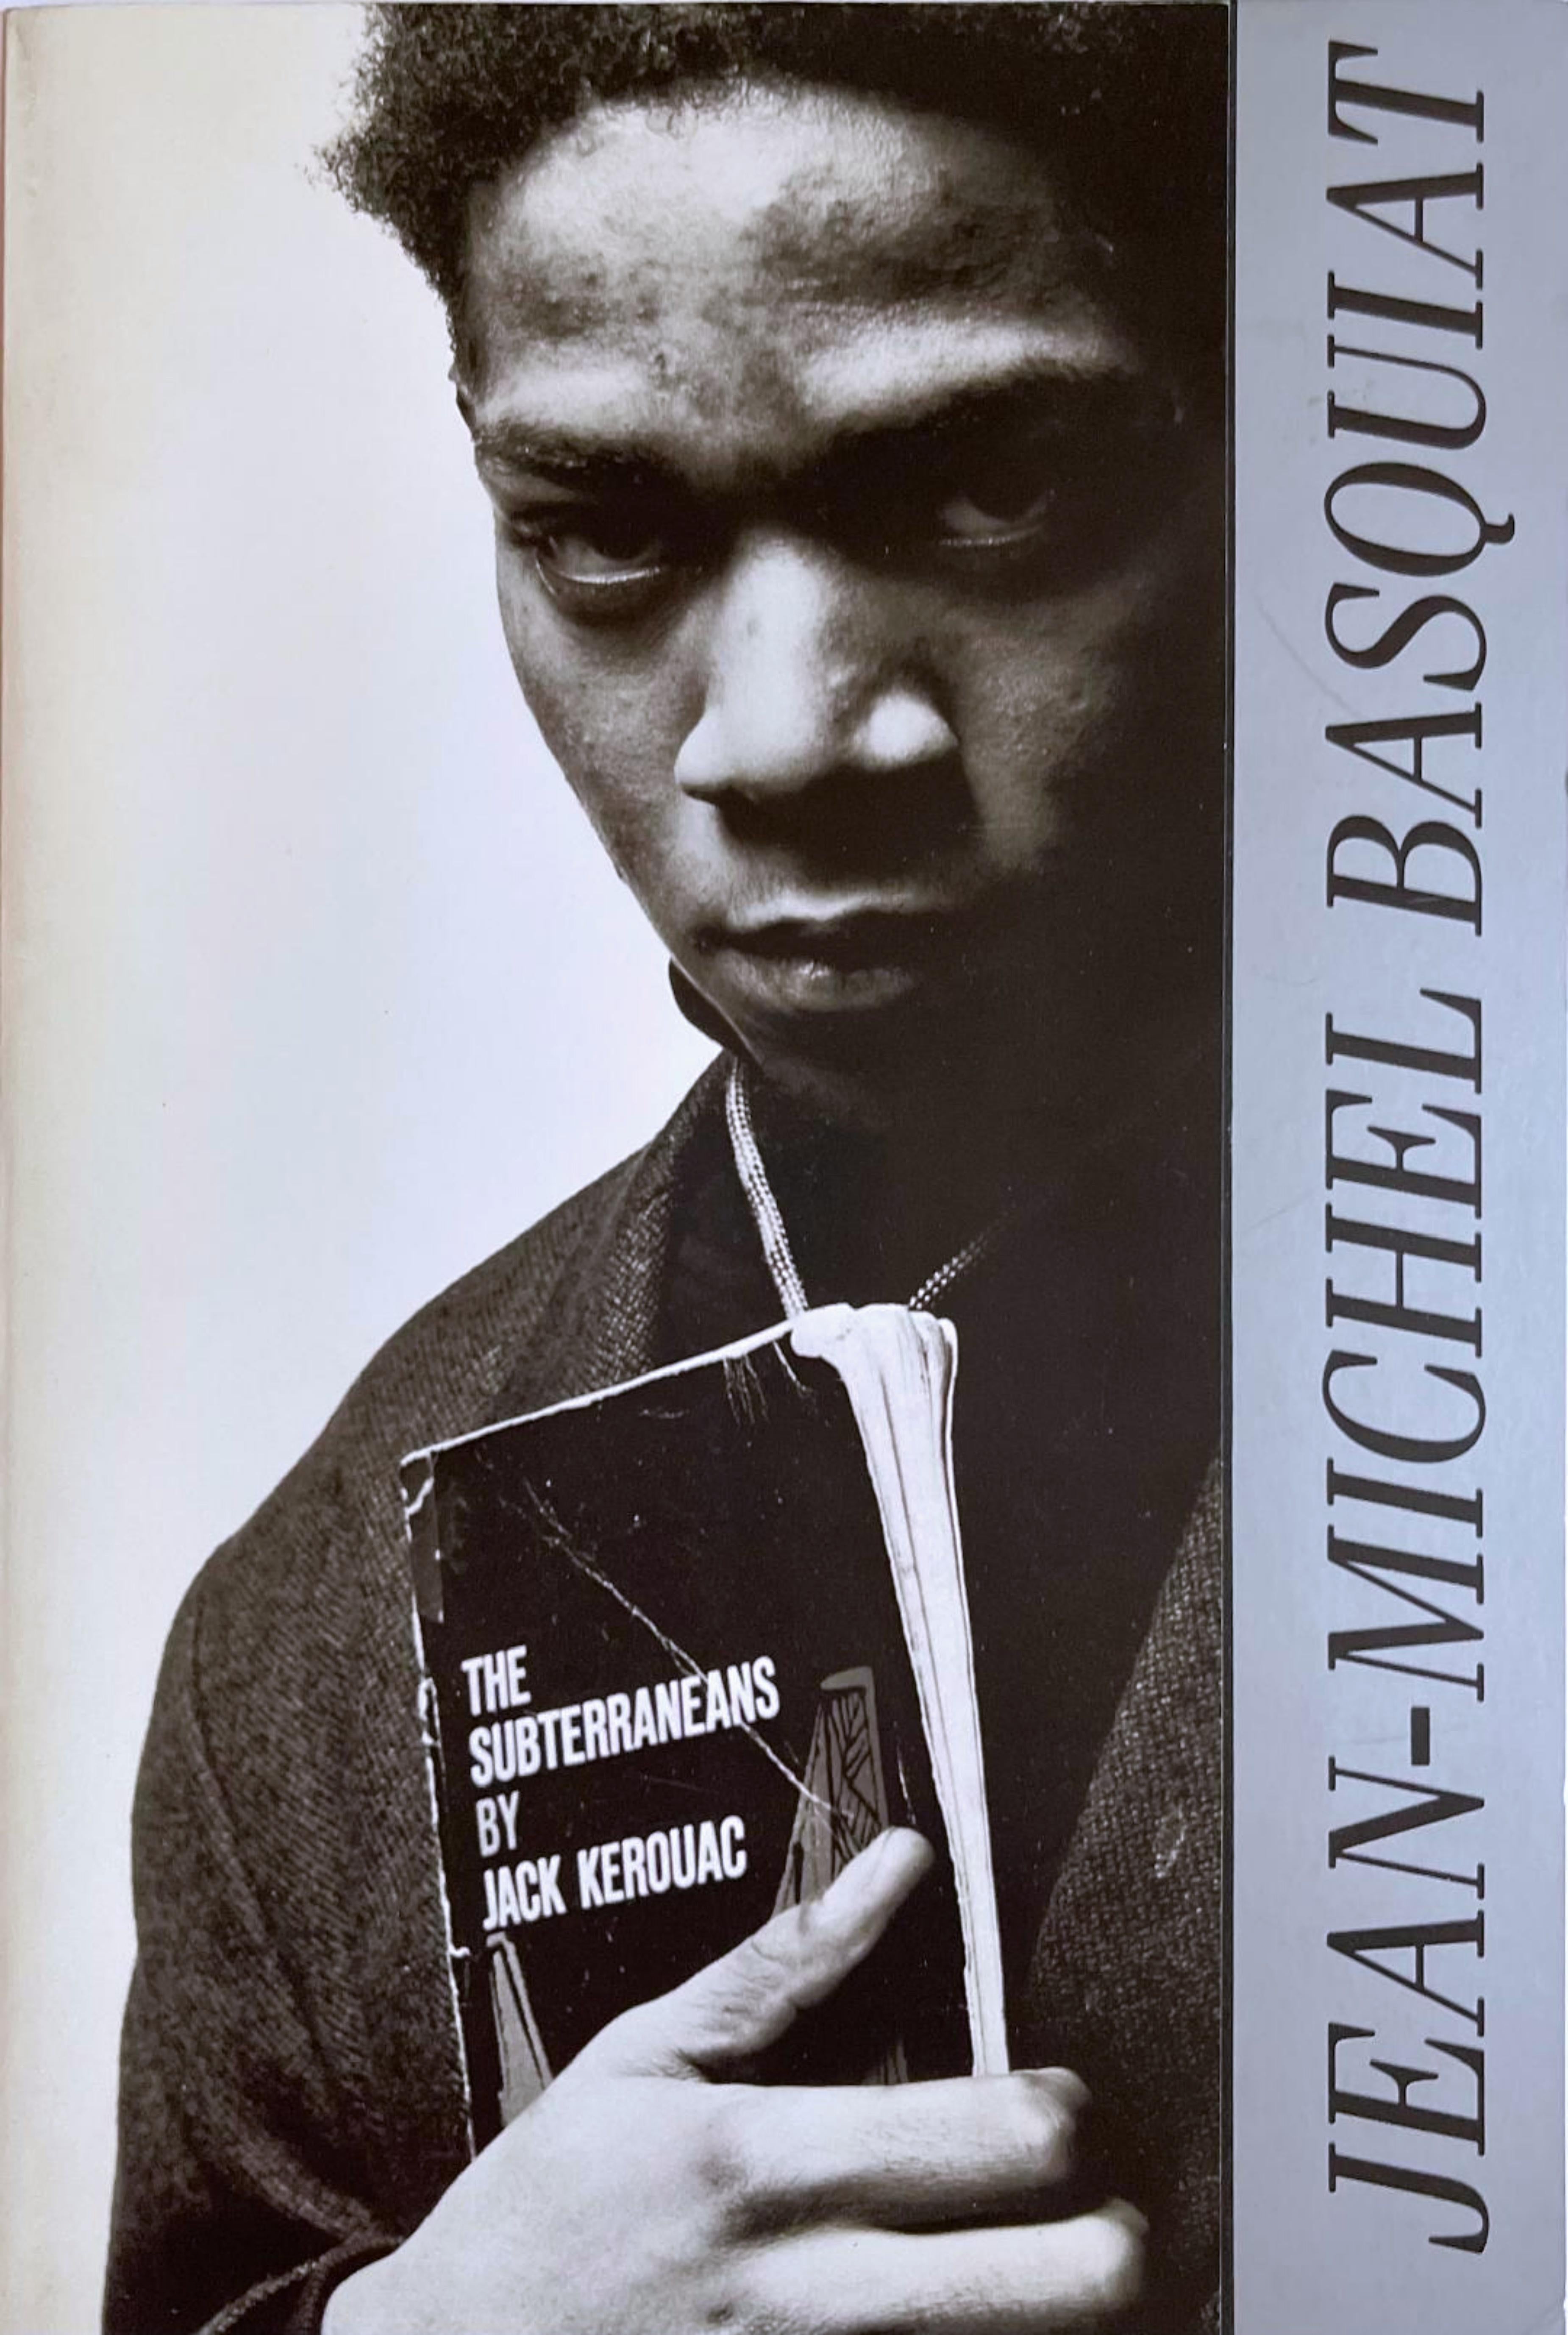 Porträt mit Jack Kerouac (Ein Einladung zu Basquiats endgültiger Ausstellung)